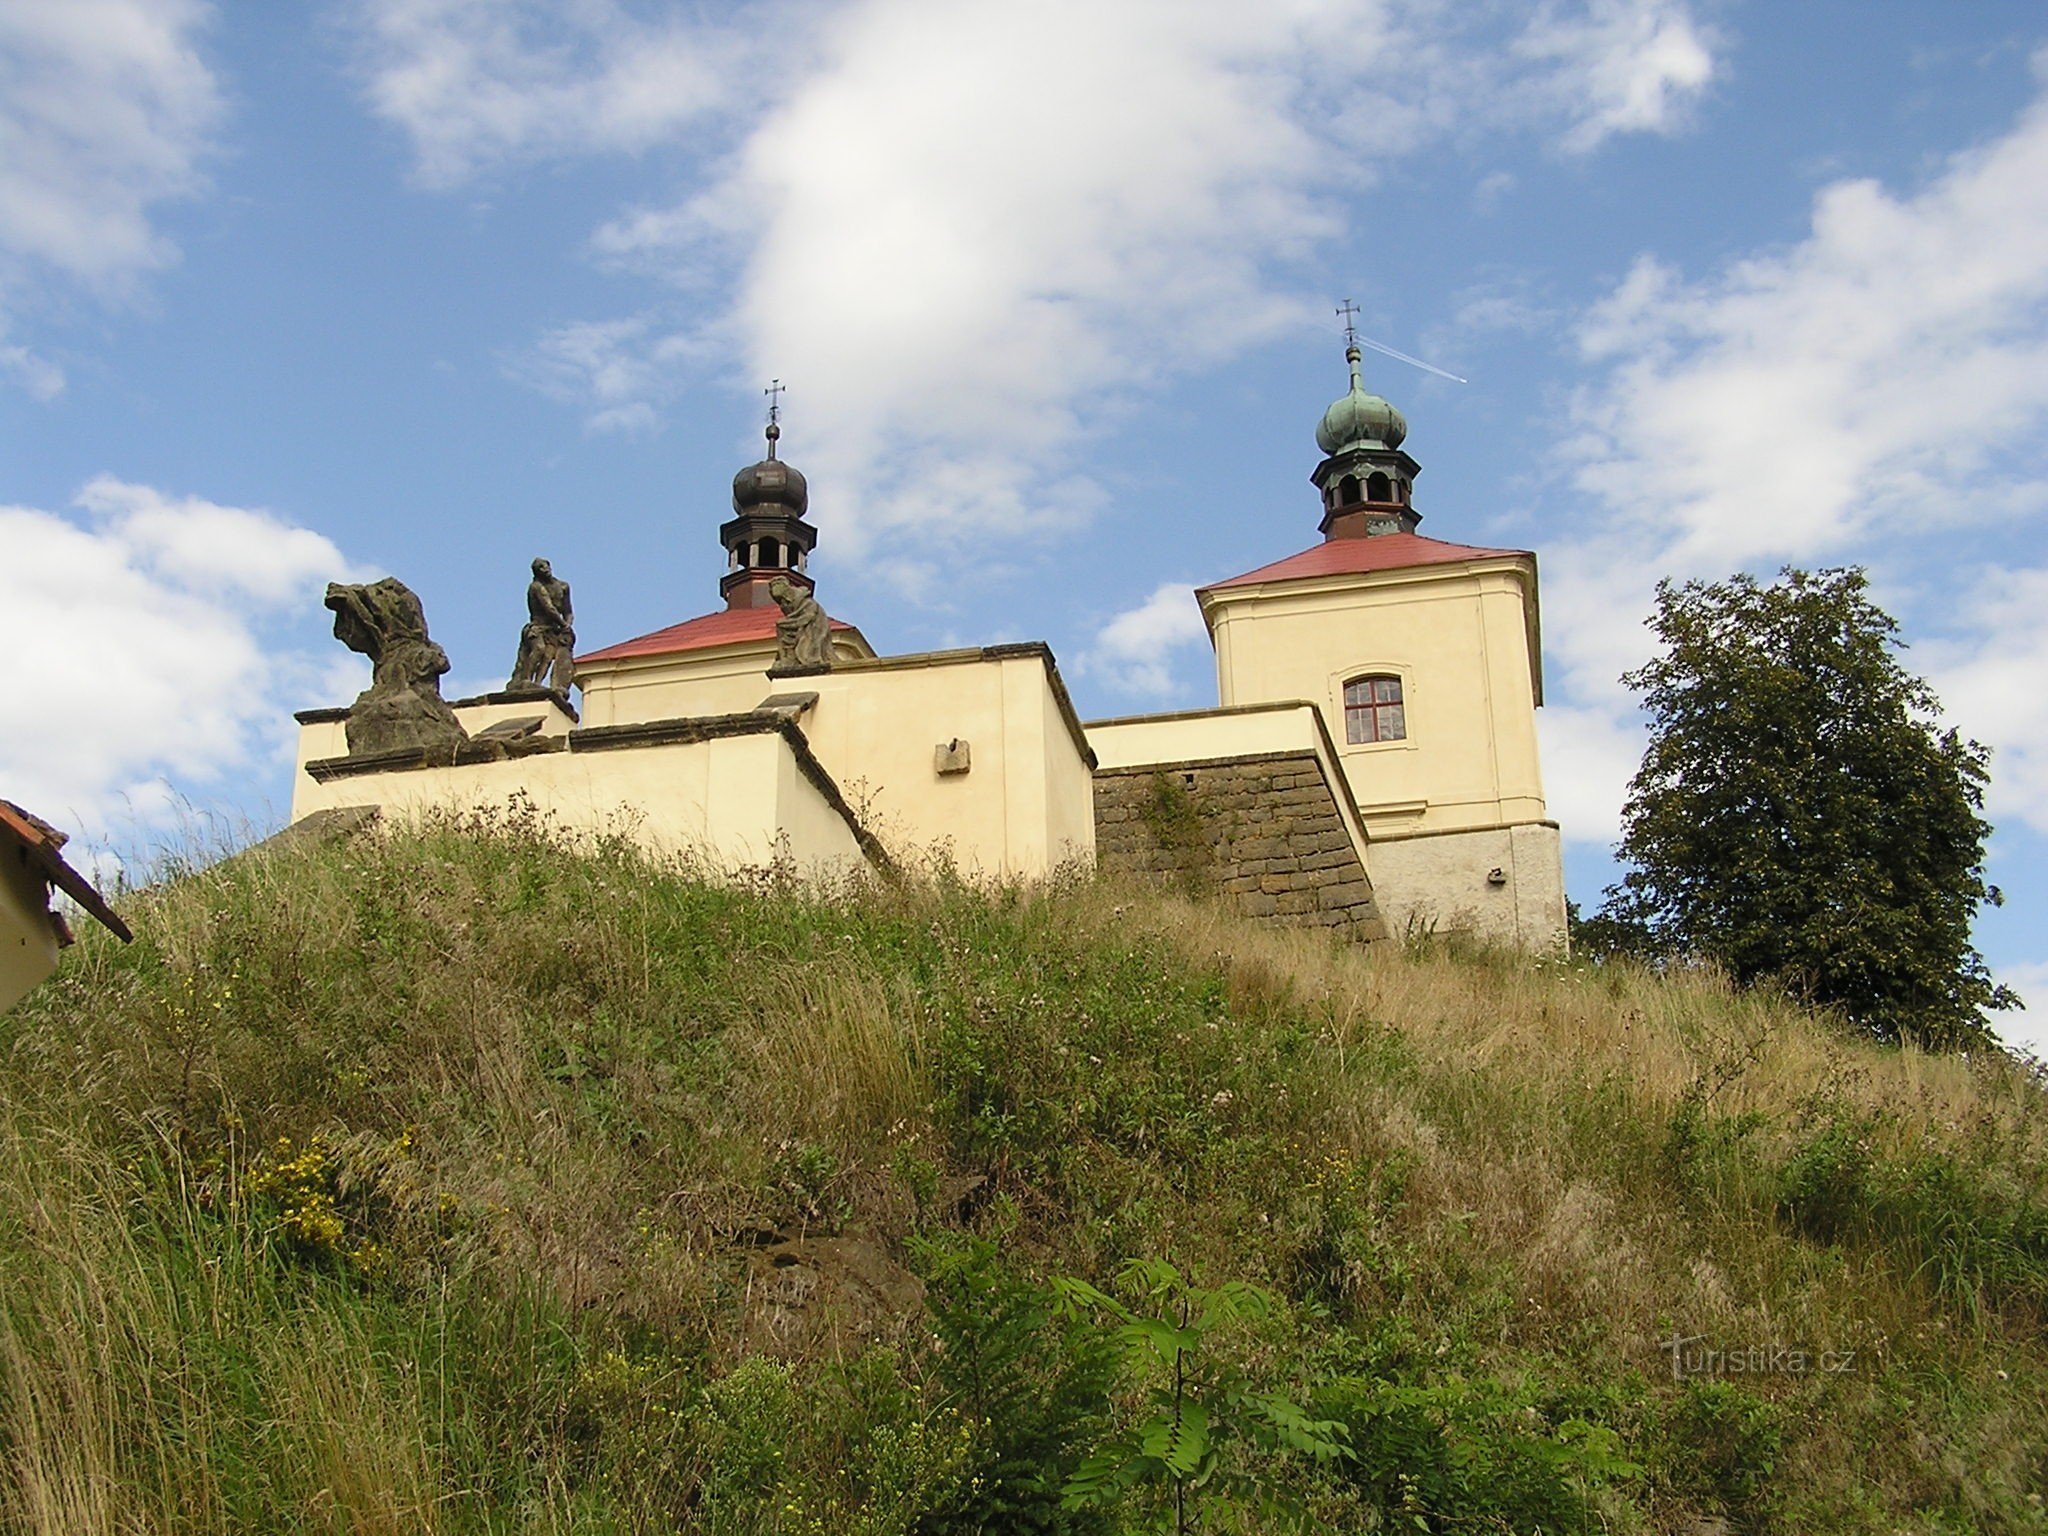 Ostré κοντά στο Úštěk (8/2014)